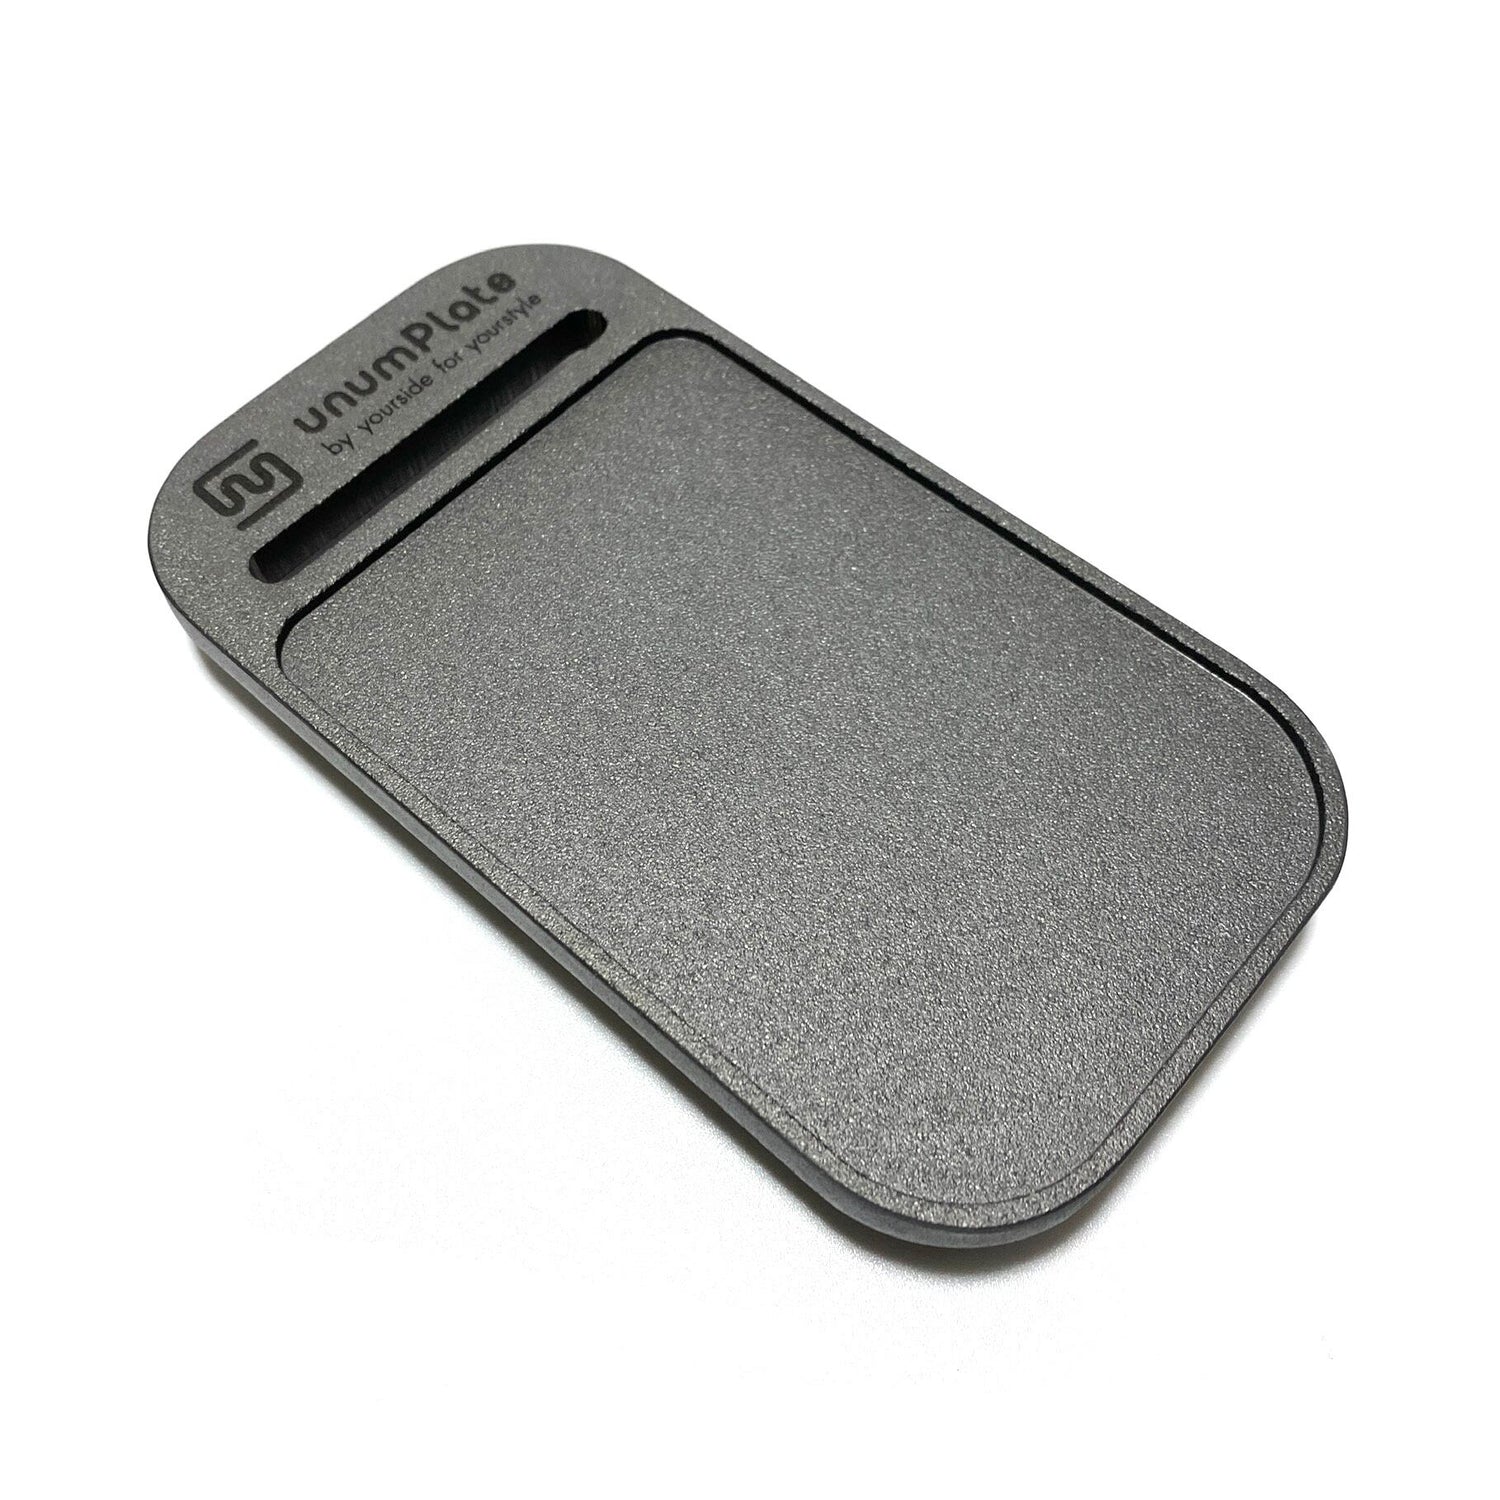 ironPlate-TR (Pocket) / トランギアメスティン用鉄板 (ウチミゾ)